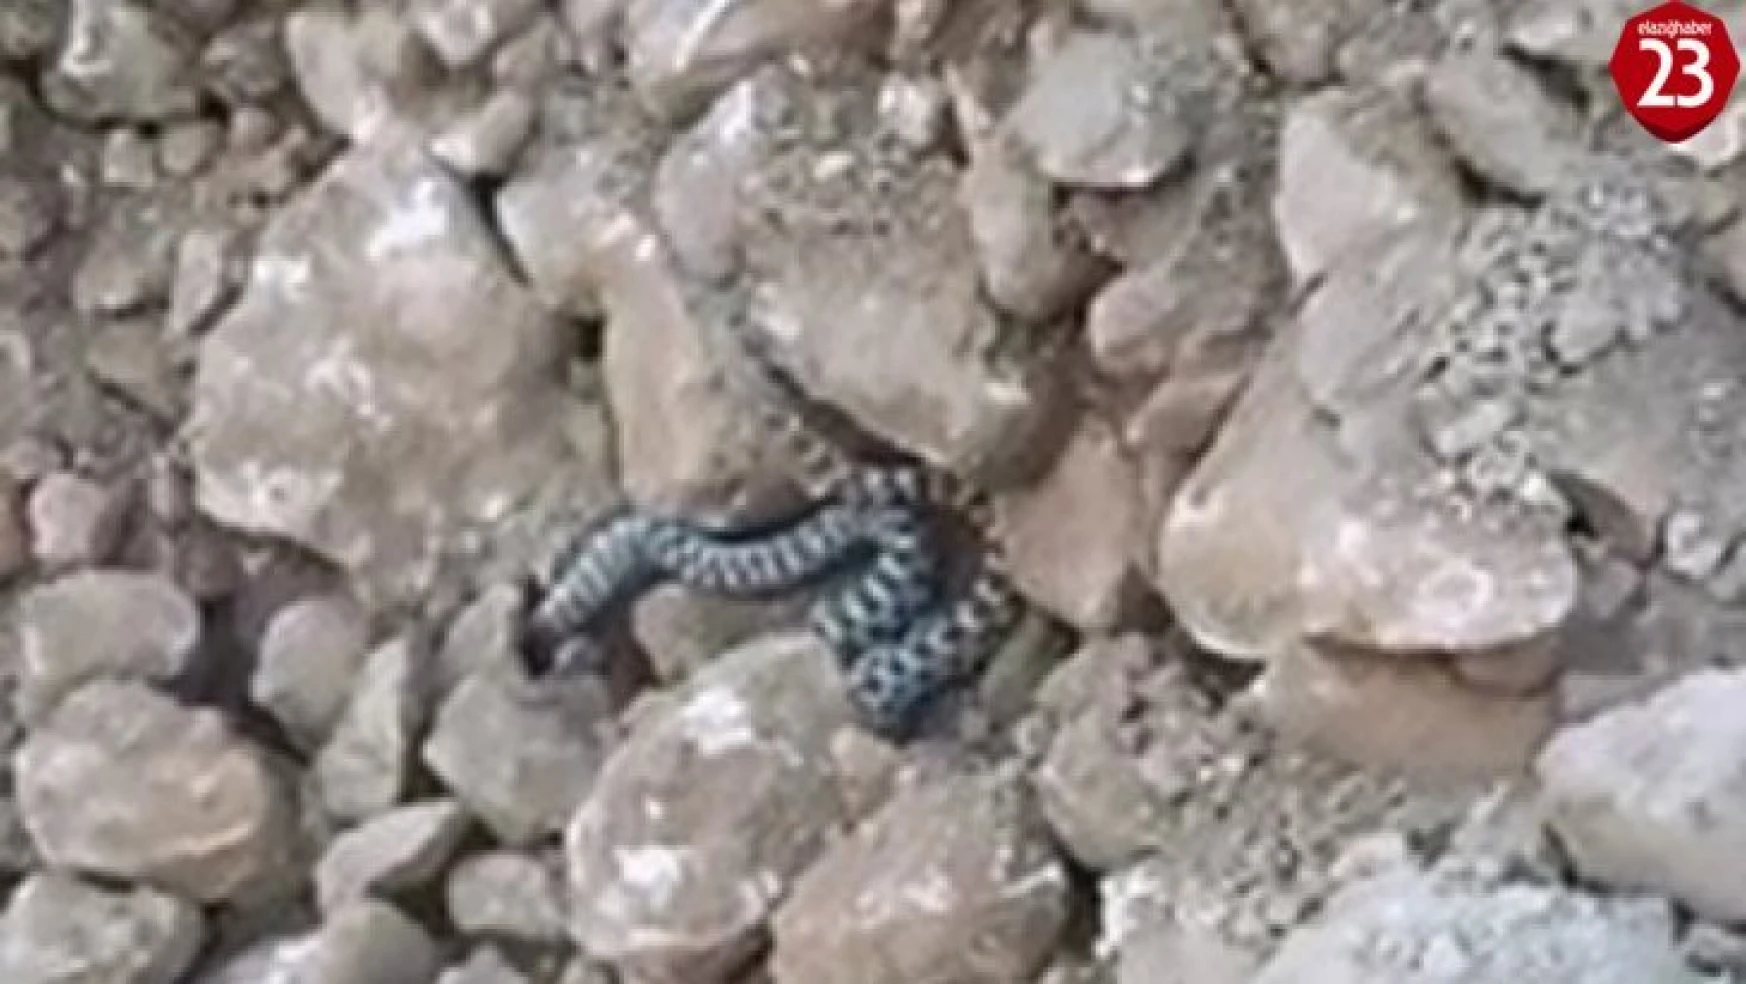 Elazığ'da yılanlar ortaya çıkmaya başladı